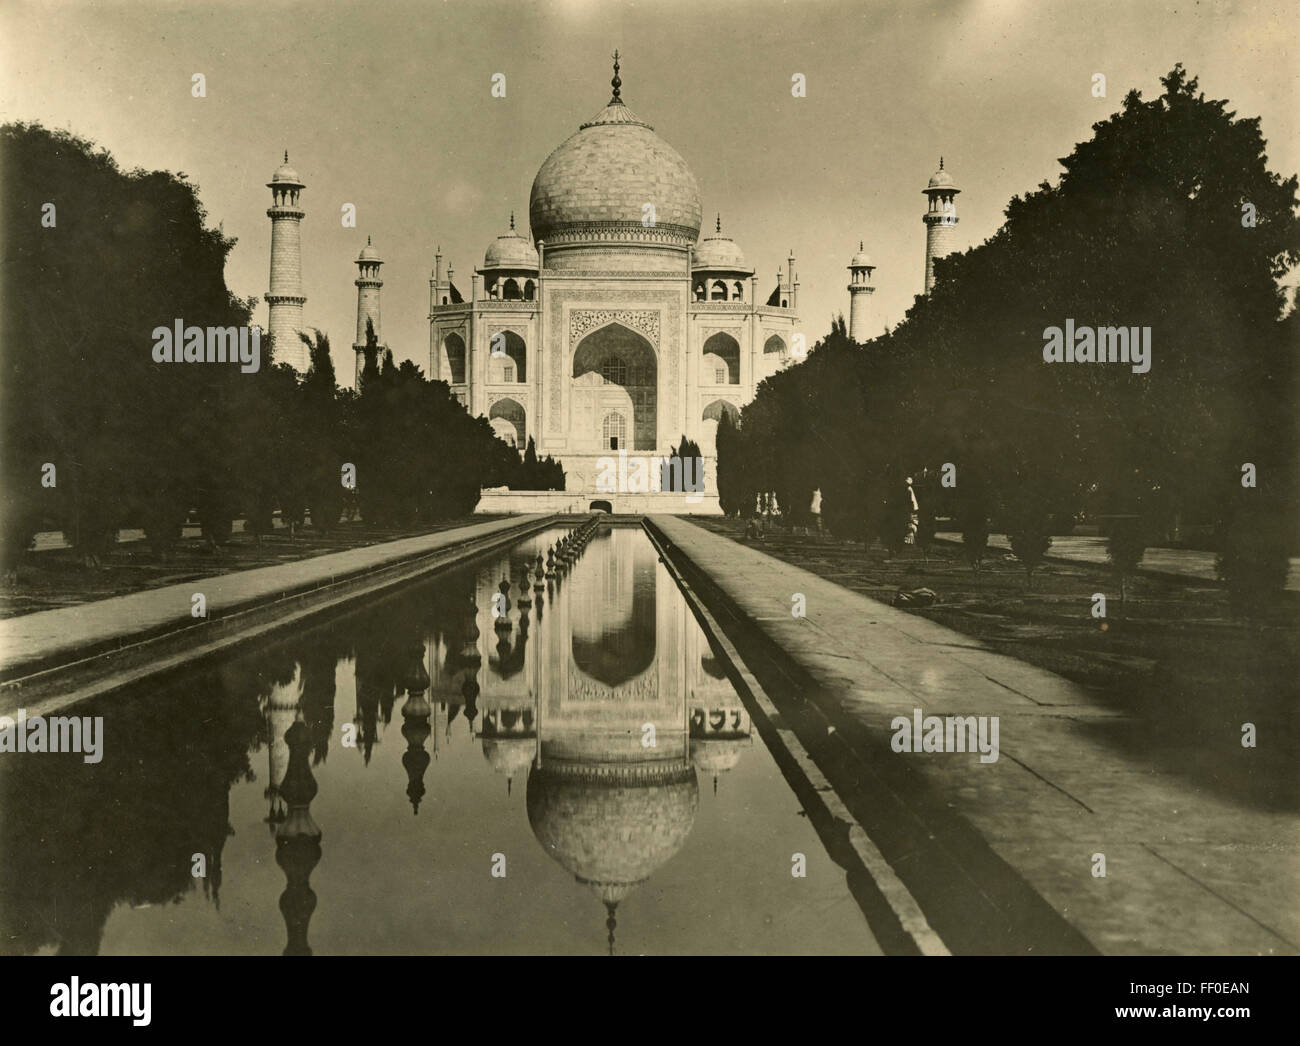 Taj Mahal, Agra, Inde Banque D'Images